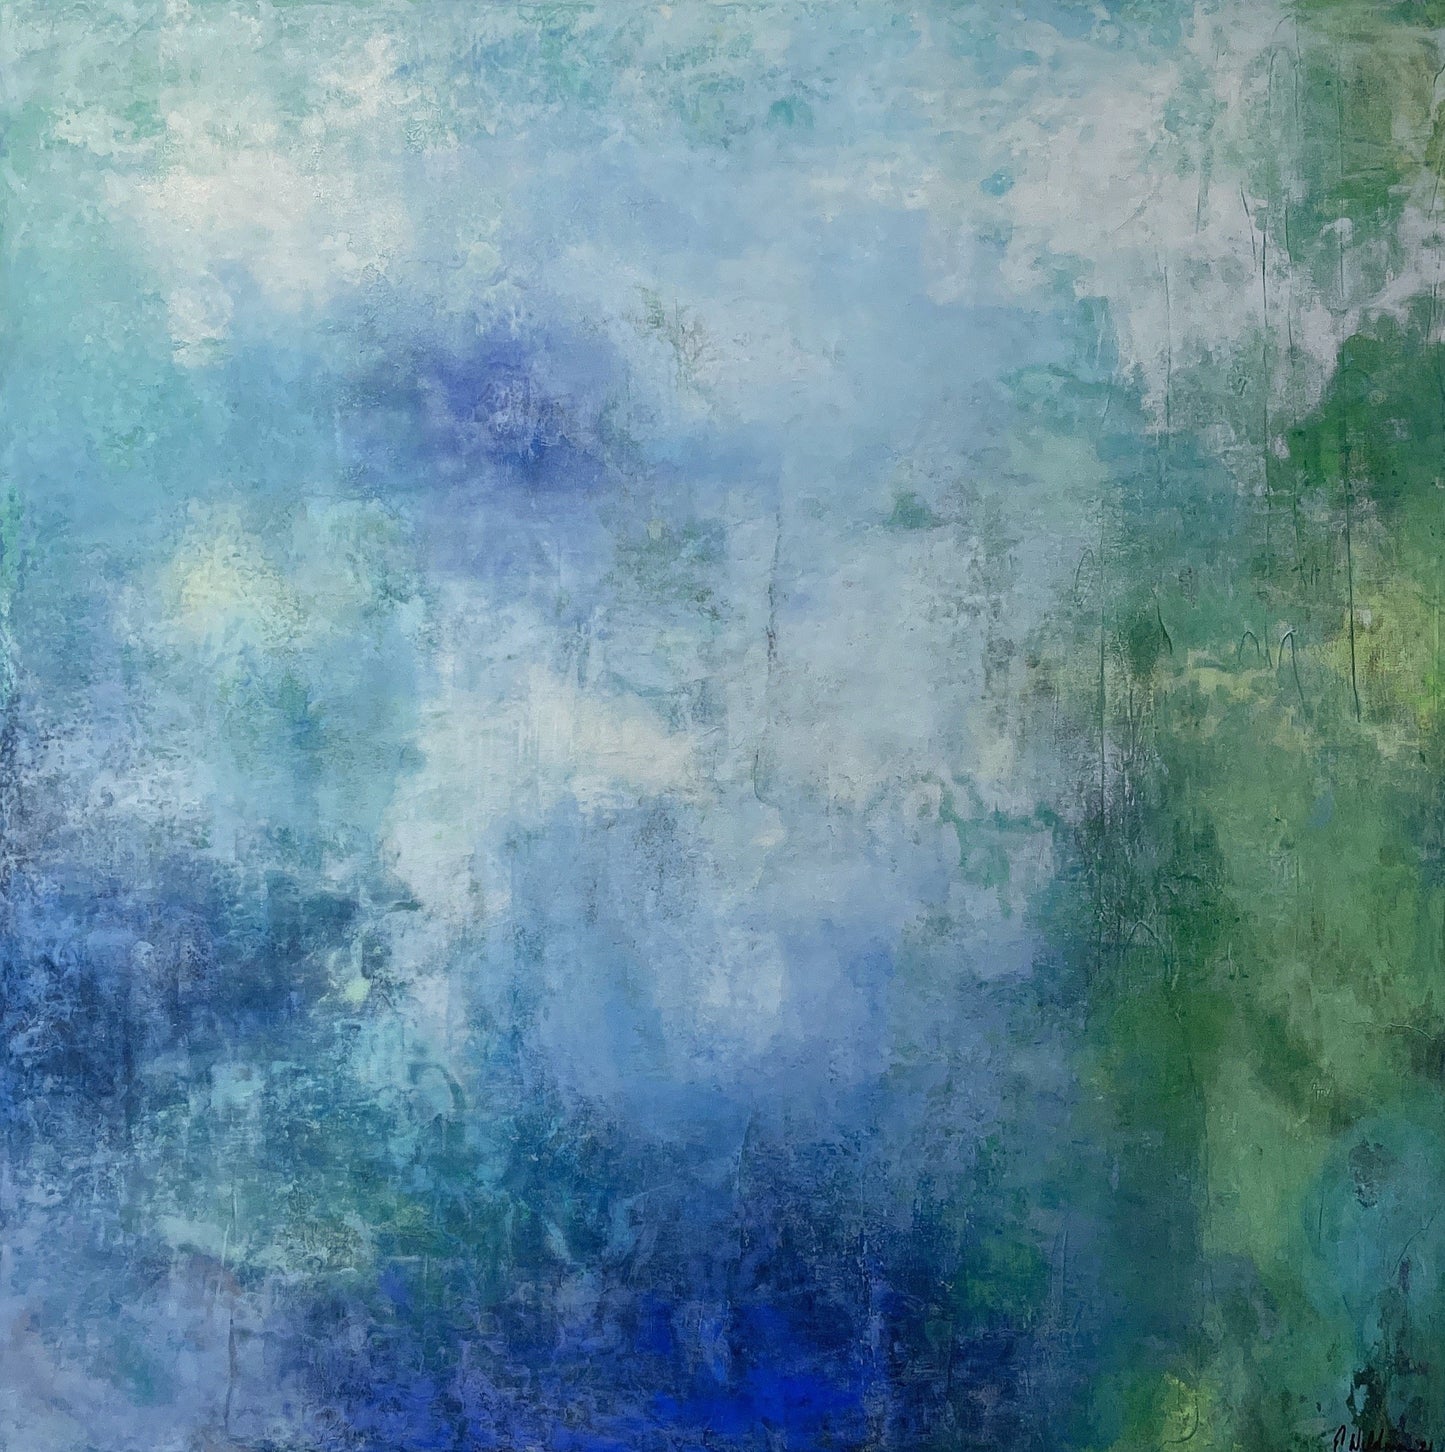 Blurred Luminosity Art Painting | Blurred Painting | E. Wildman Gallery